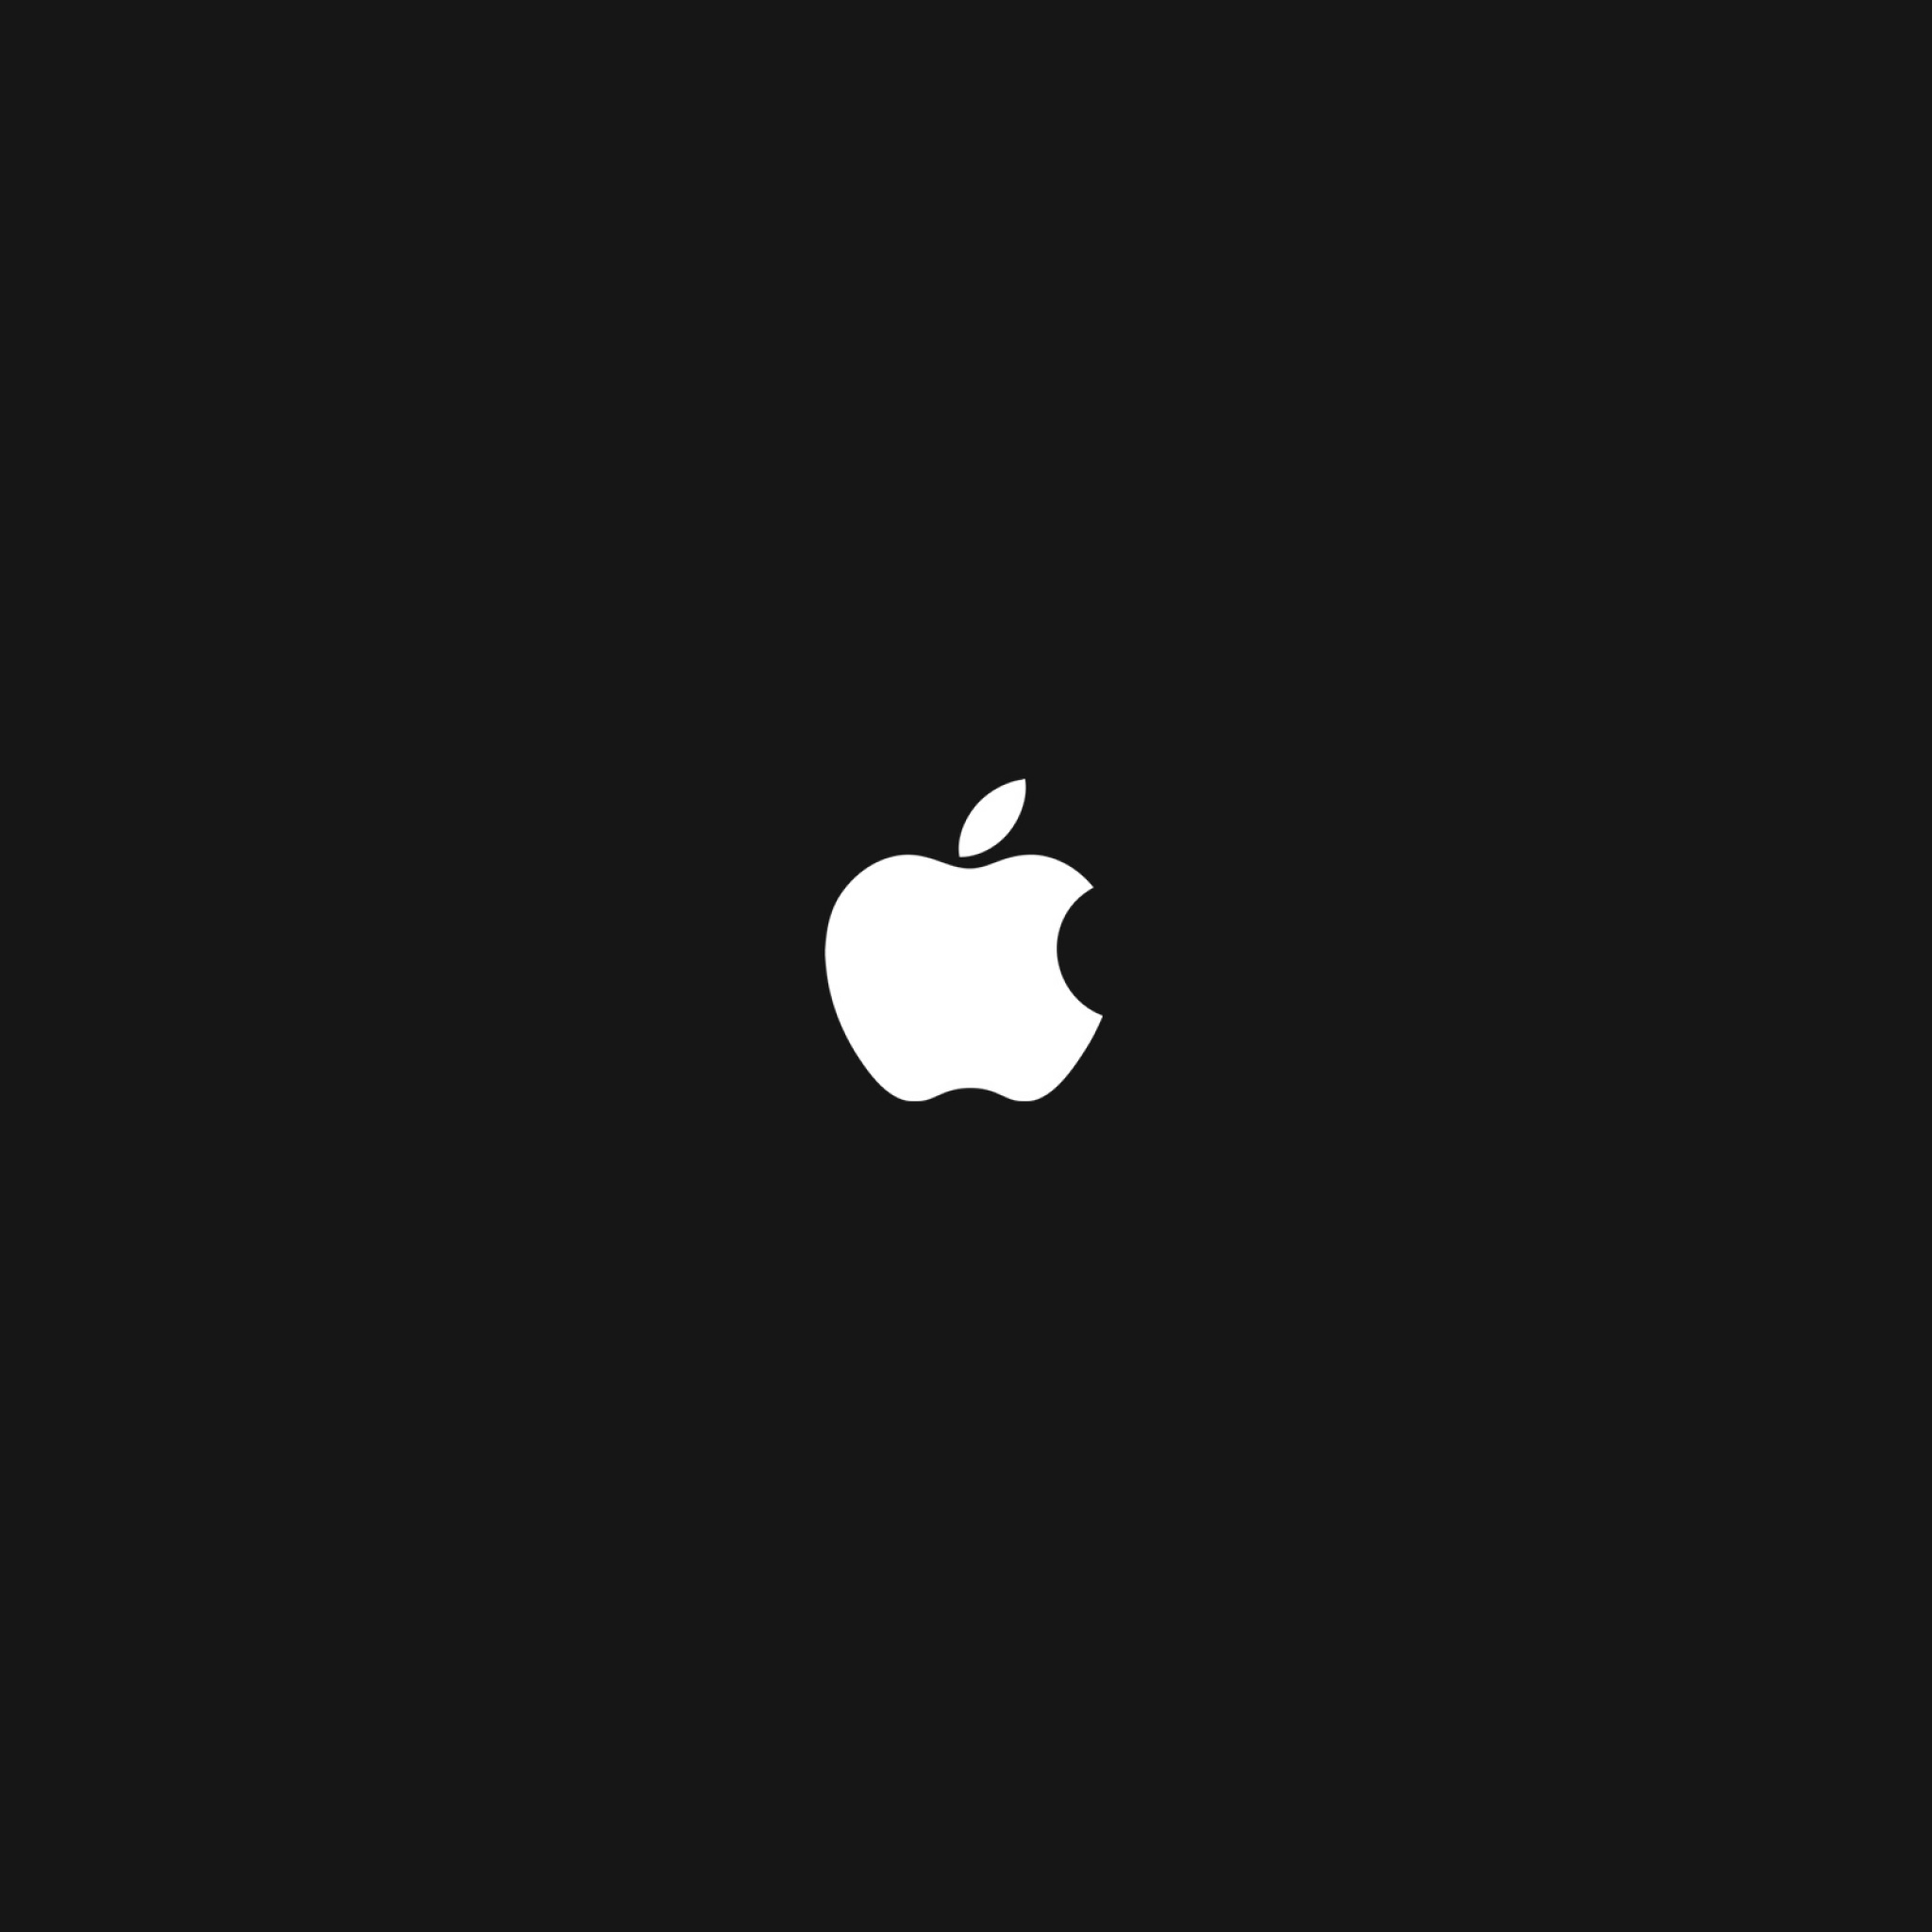 Apple Logo Ipad 3 4 Air Wallpaper Ipad タブレット壁紙ギャラリー